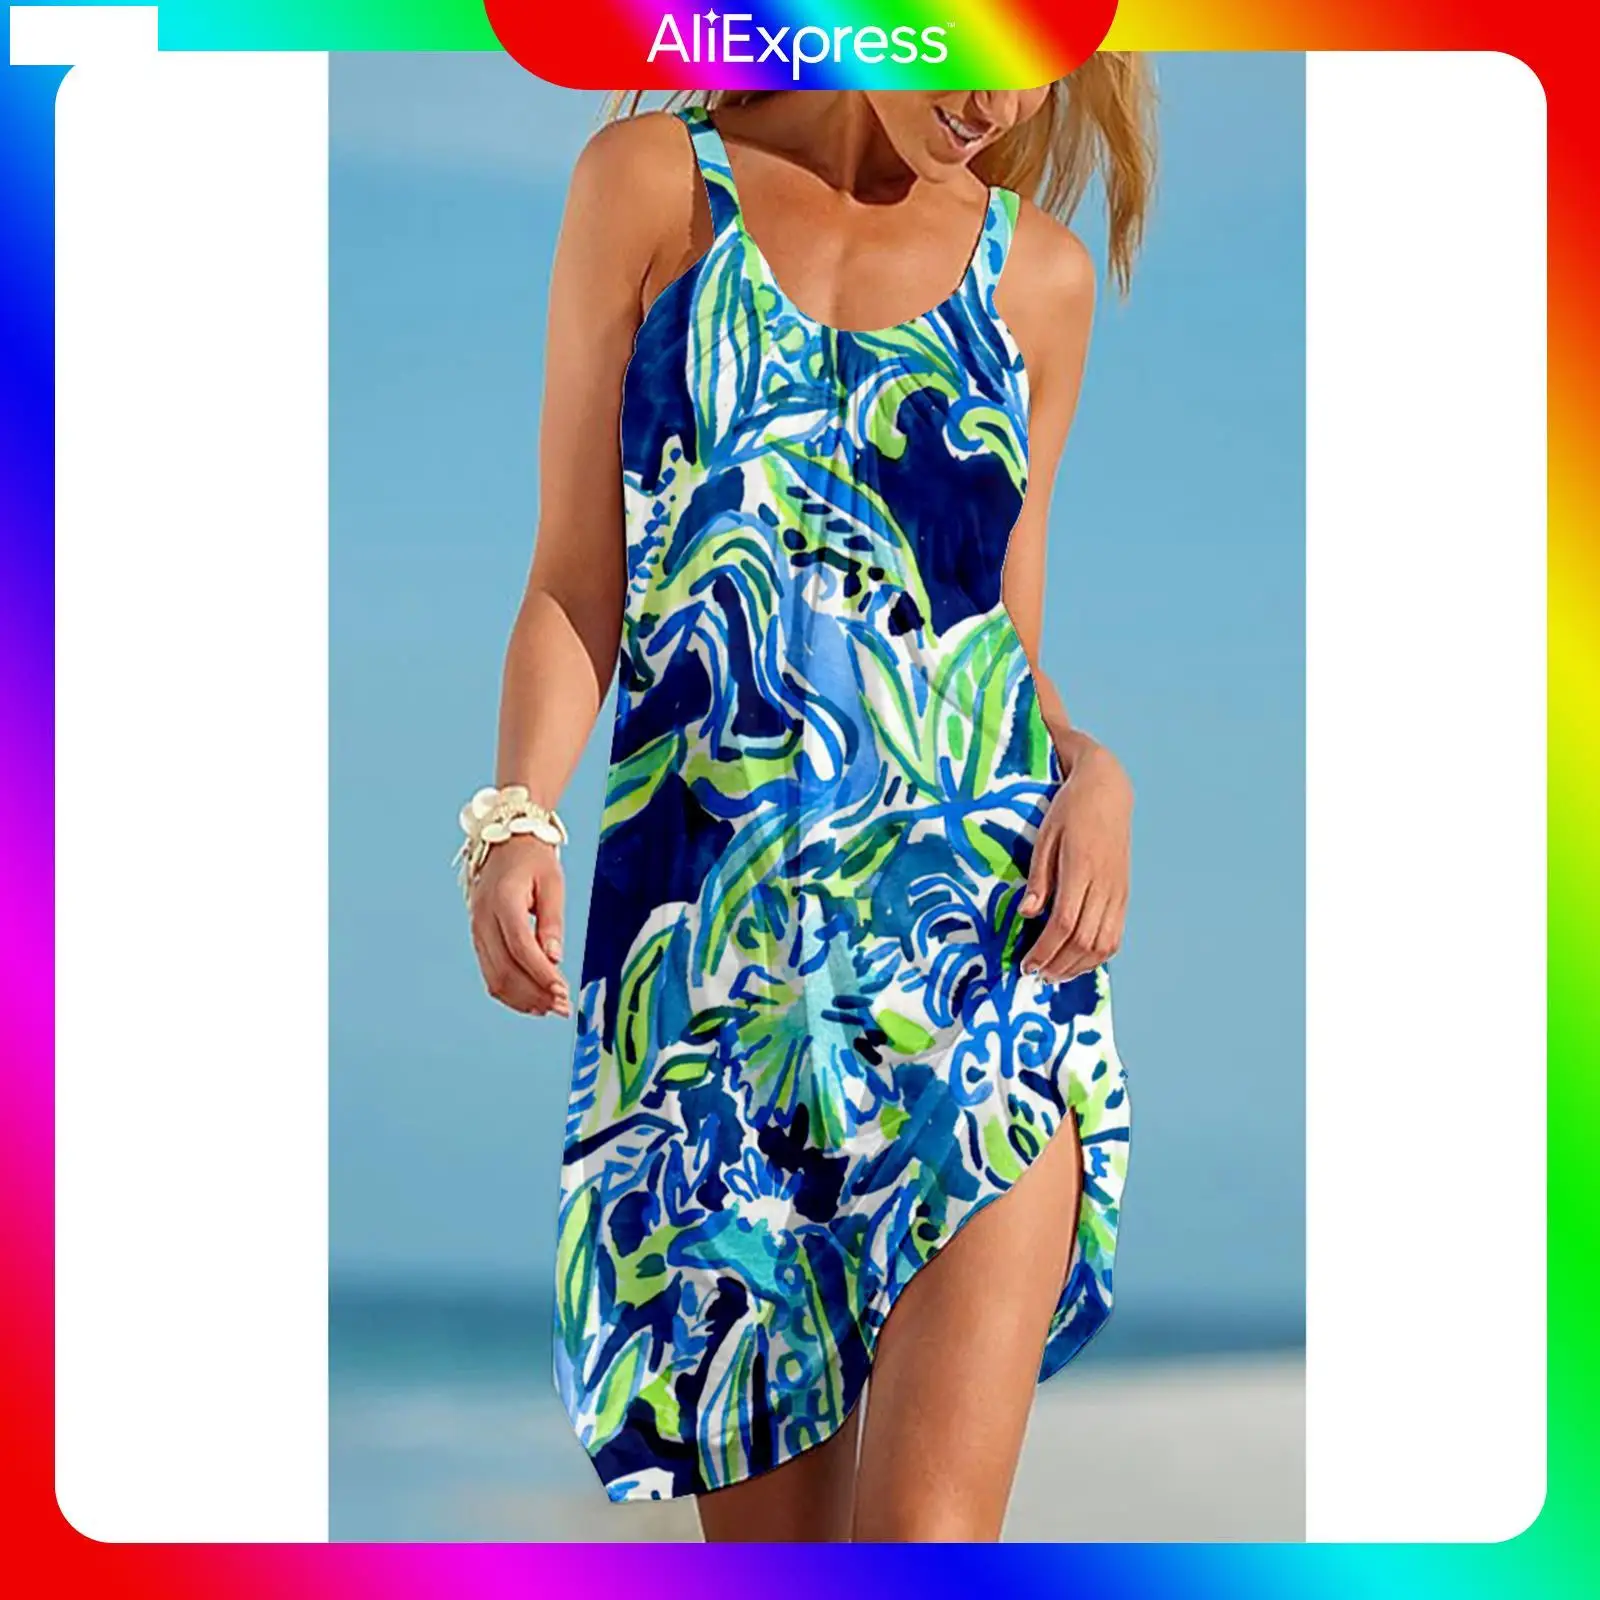 

Женский пляжный сарафан в стиле бохо, голубое платье с принтом, открытыми плечами, без рукавов, праздничный пляжный ночной наряд для лета